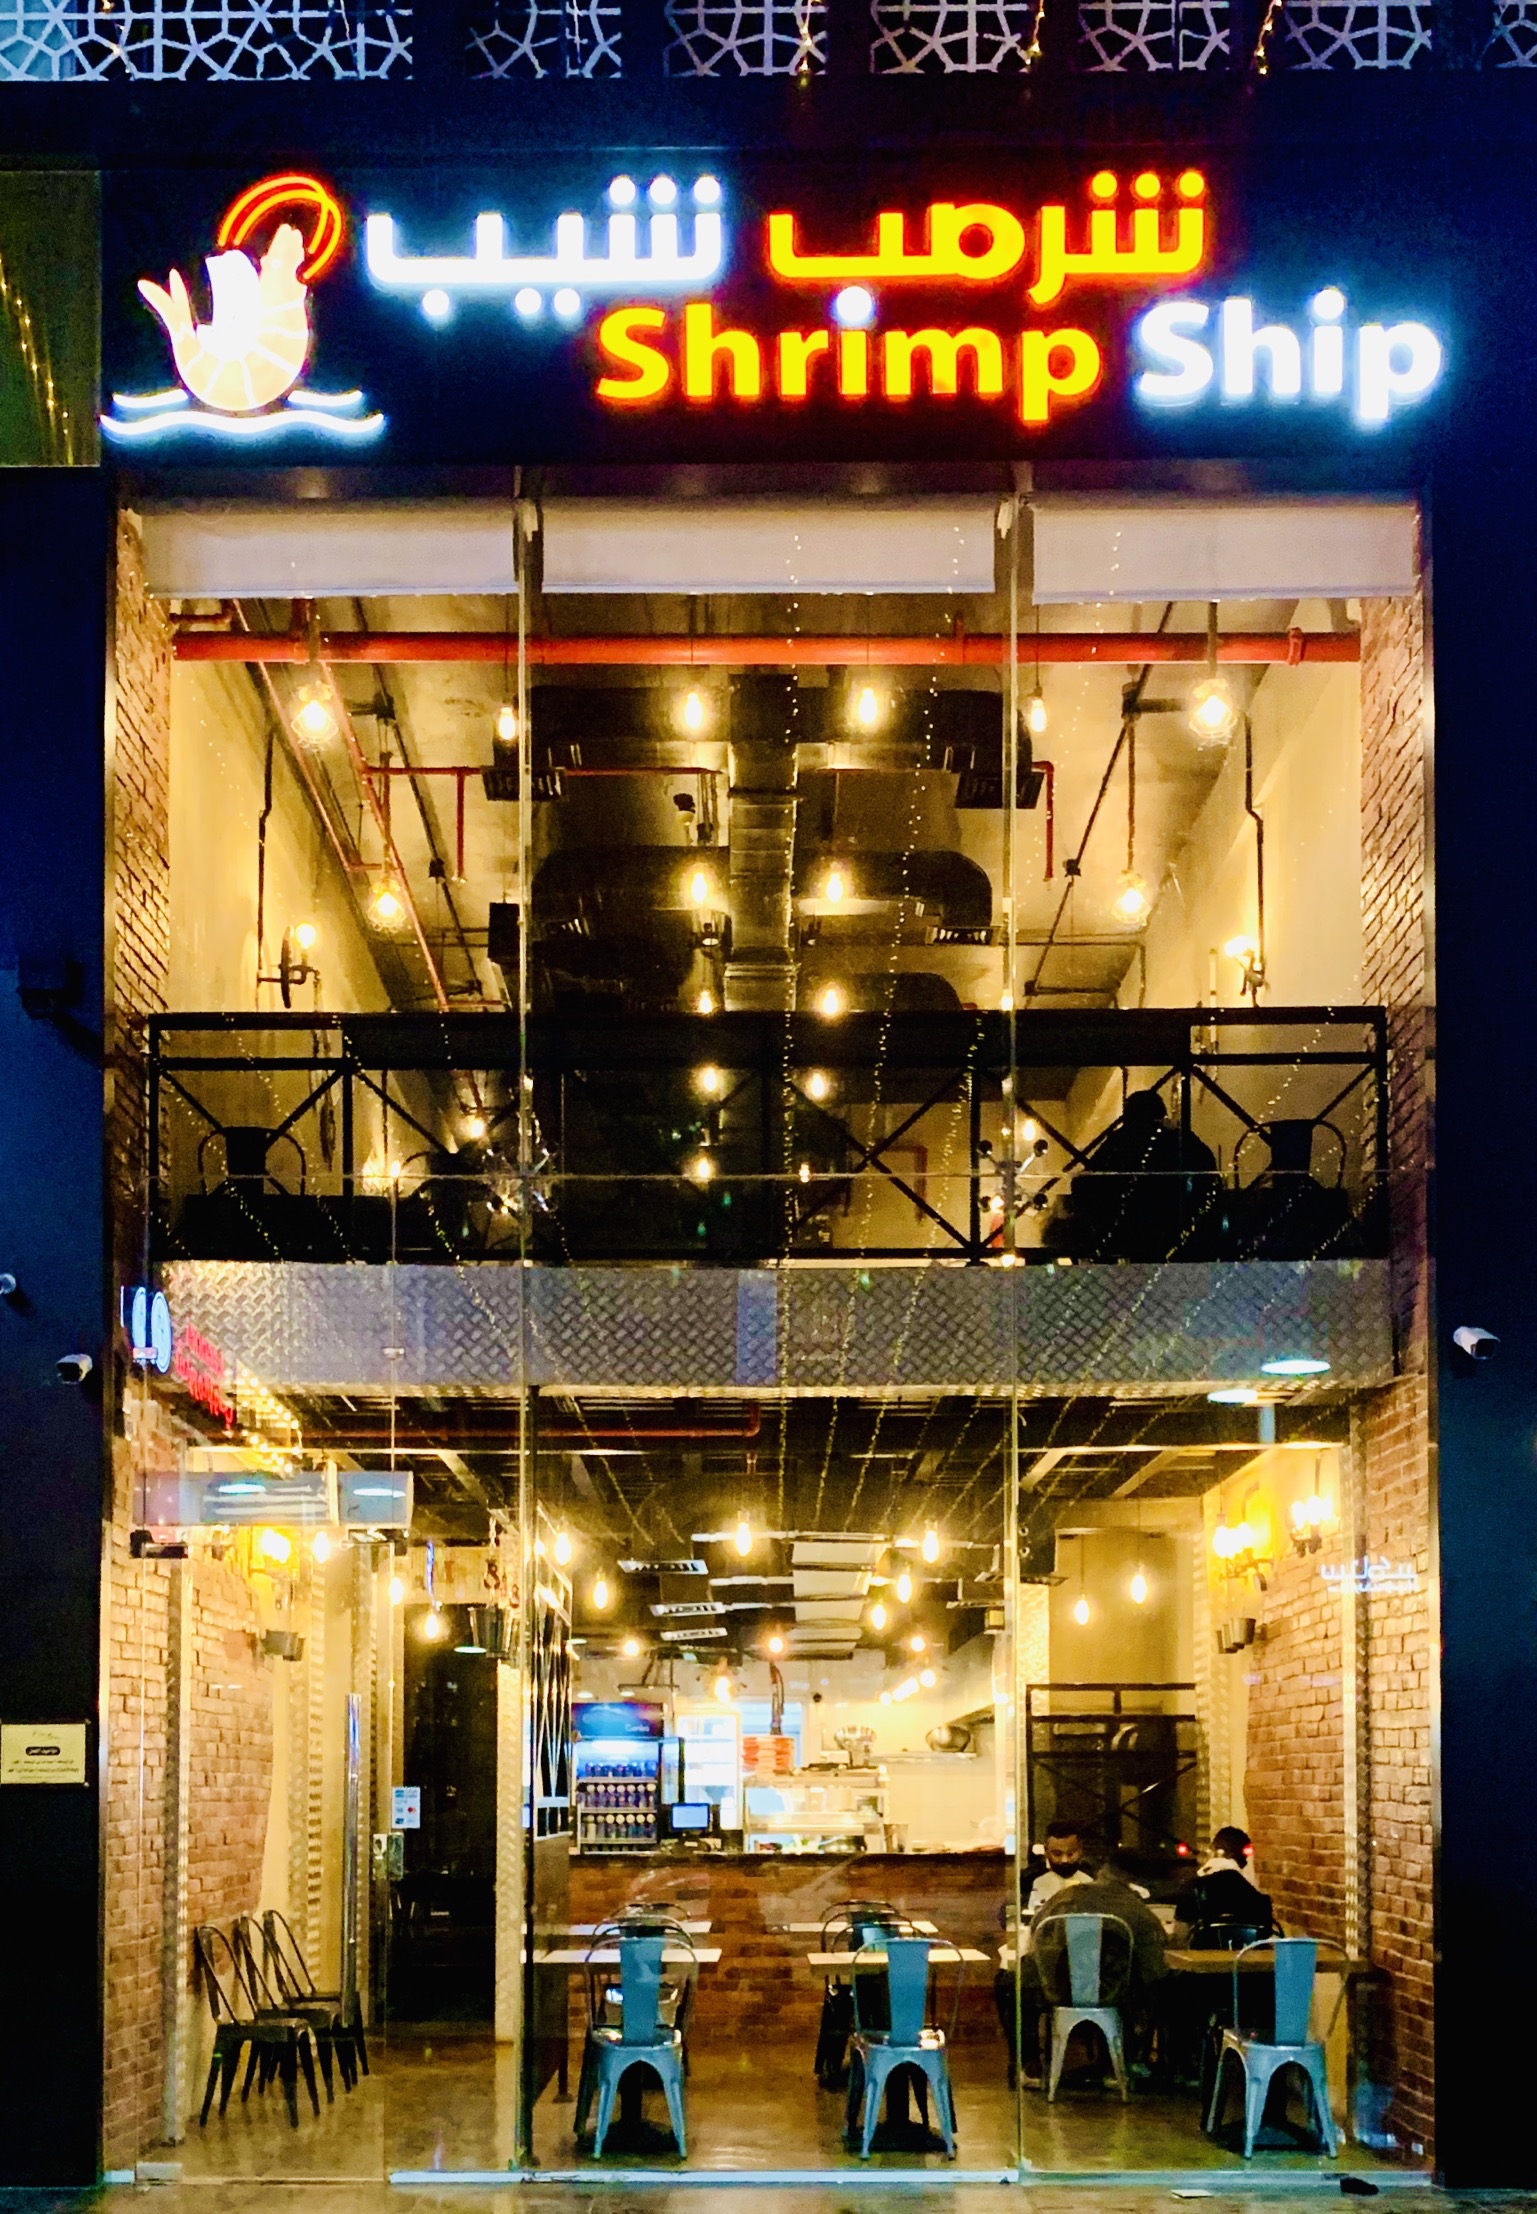 منيو ورقم عنوان وأسعار مطعم شرمب شيب Shrimp Chips